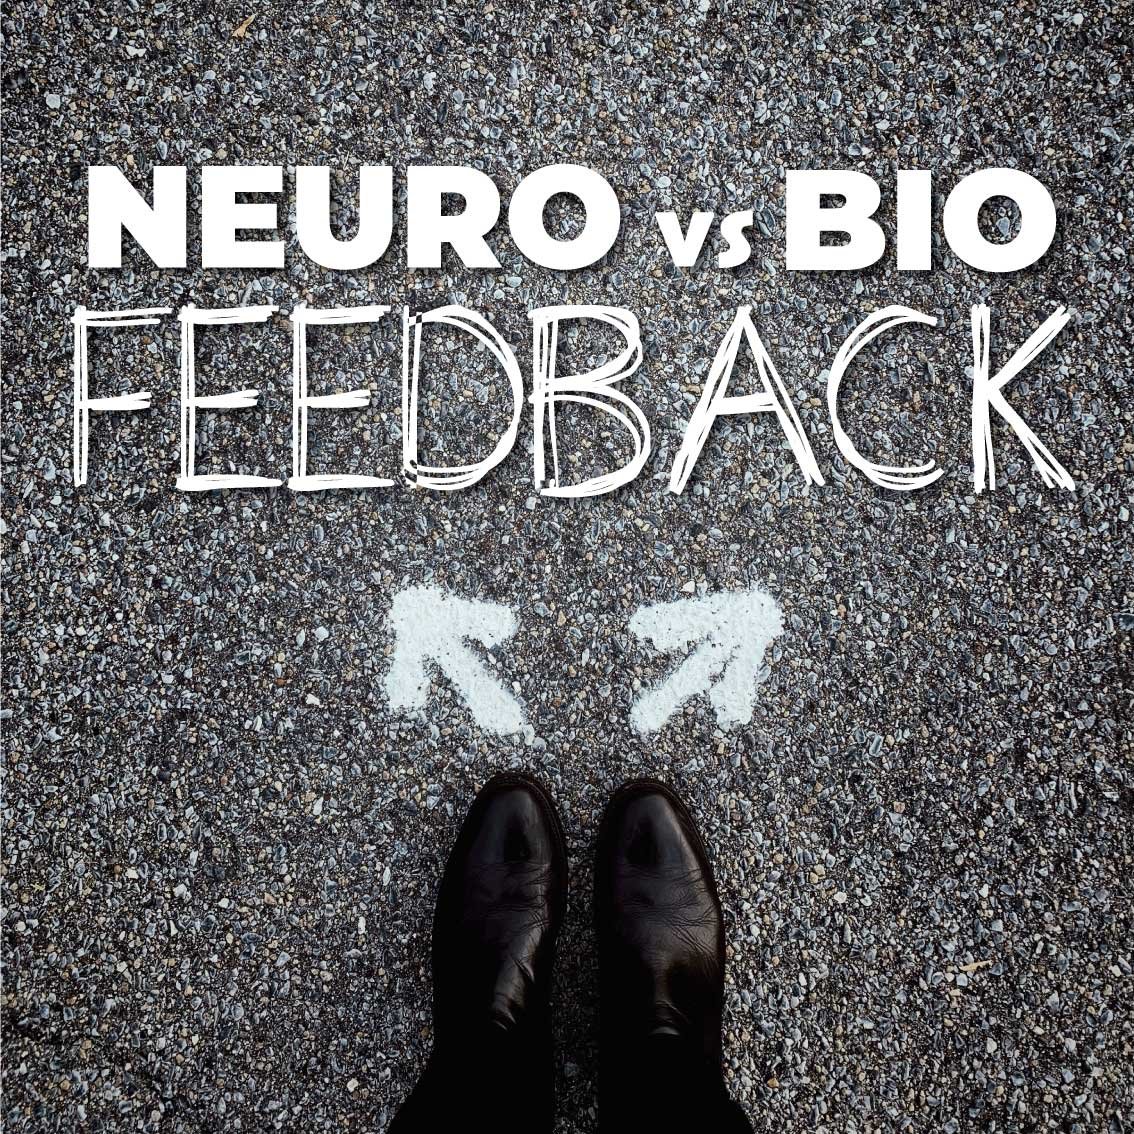 Neurofeedback vs Biofeedback